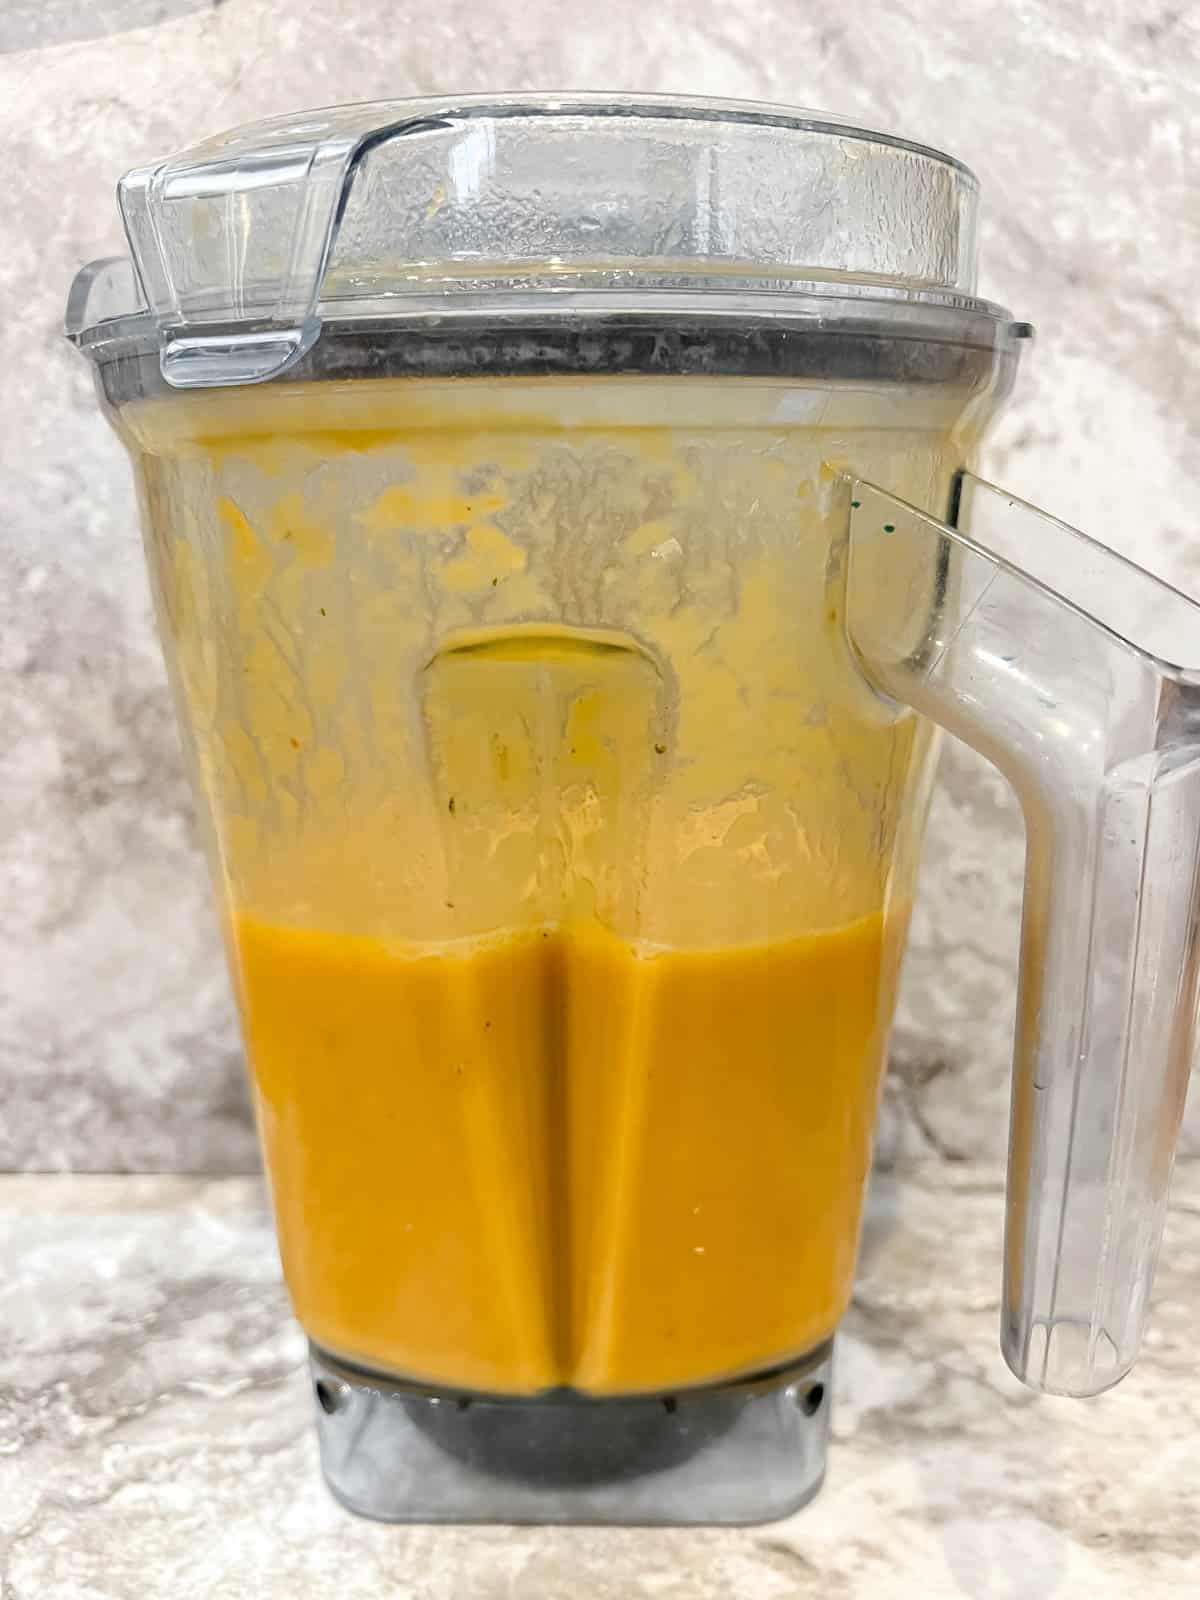 Pumpkin and sweet potato soup in a blender after blending.